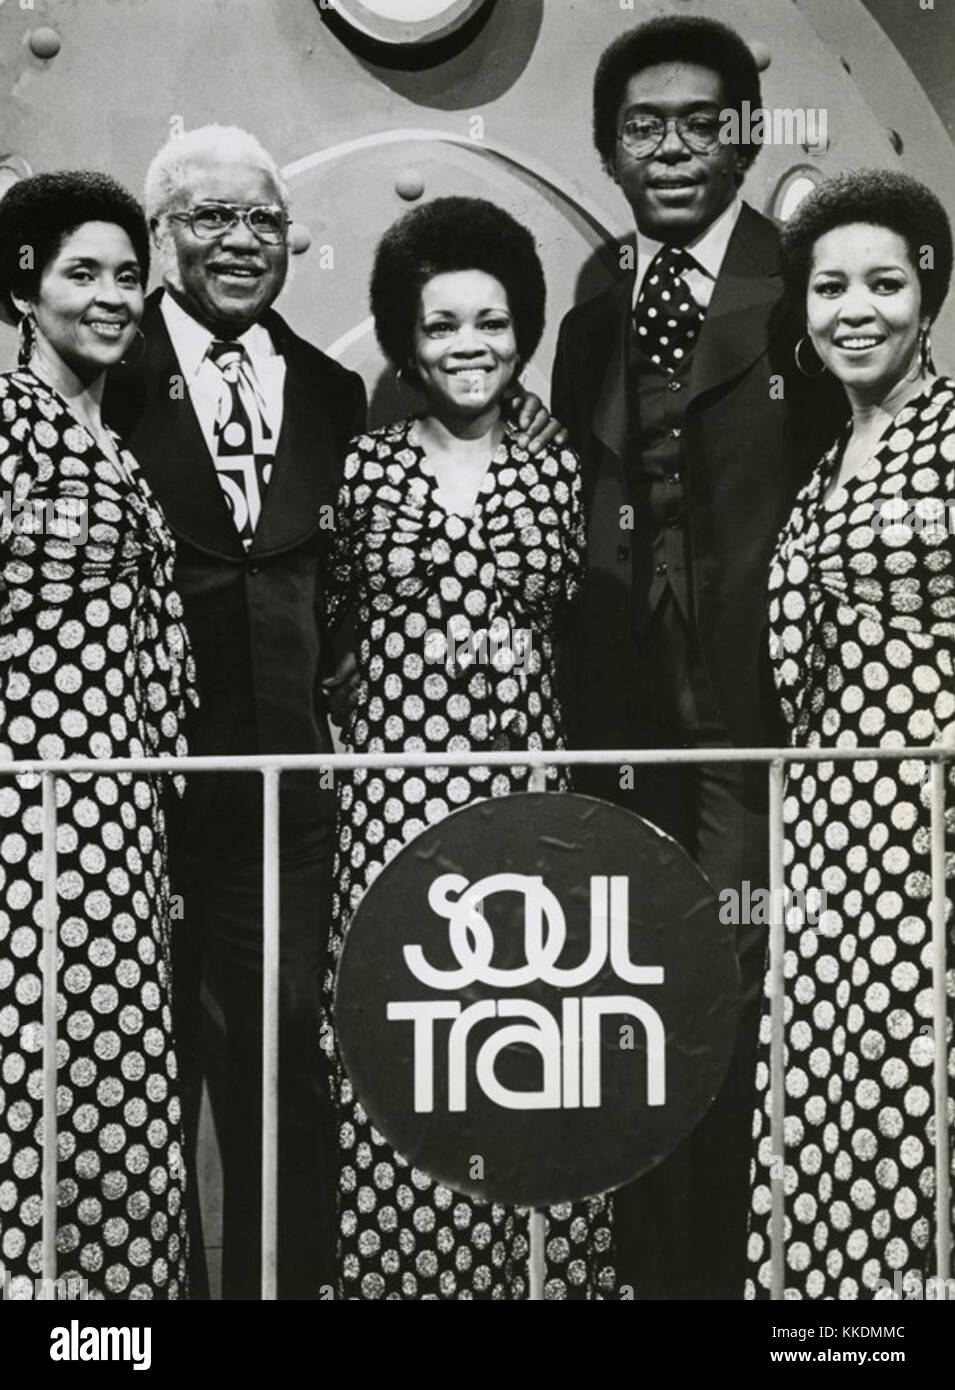 Cucitrice su cantanti Soul Train Foto Stock